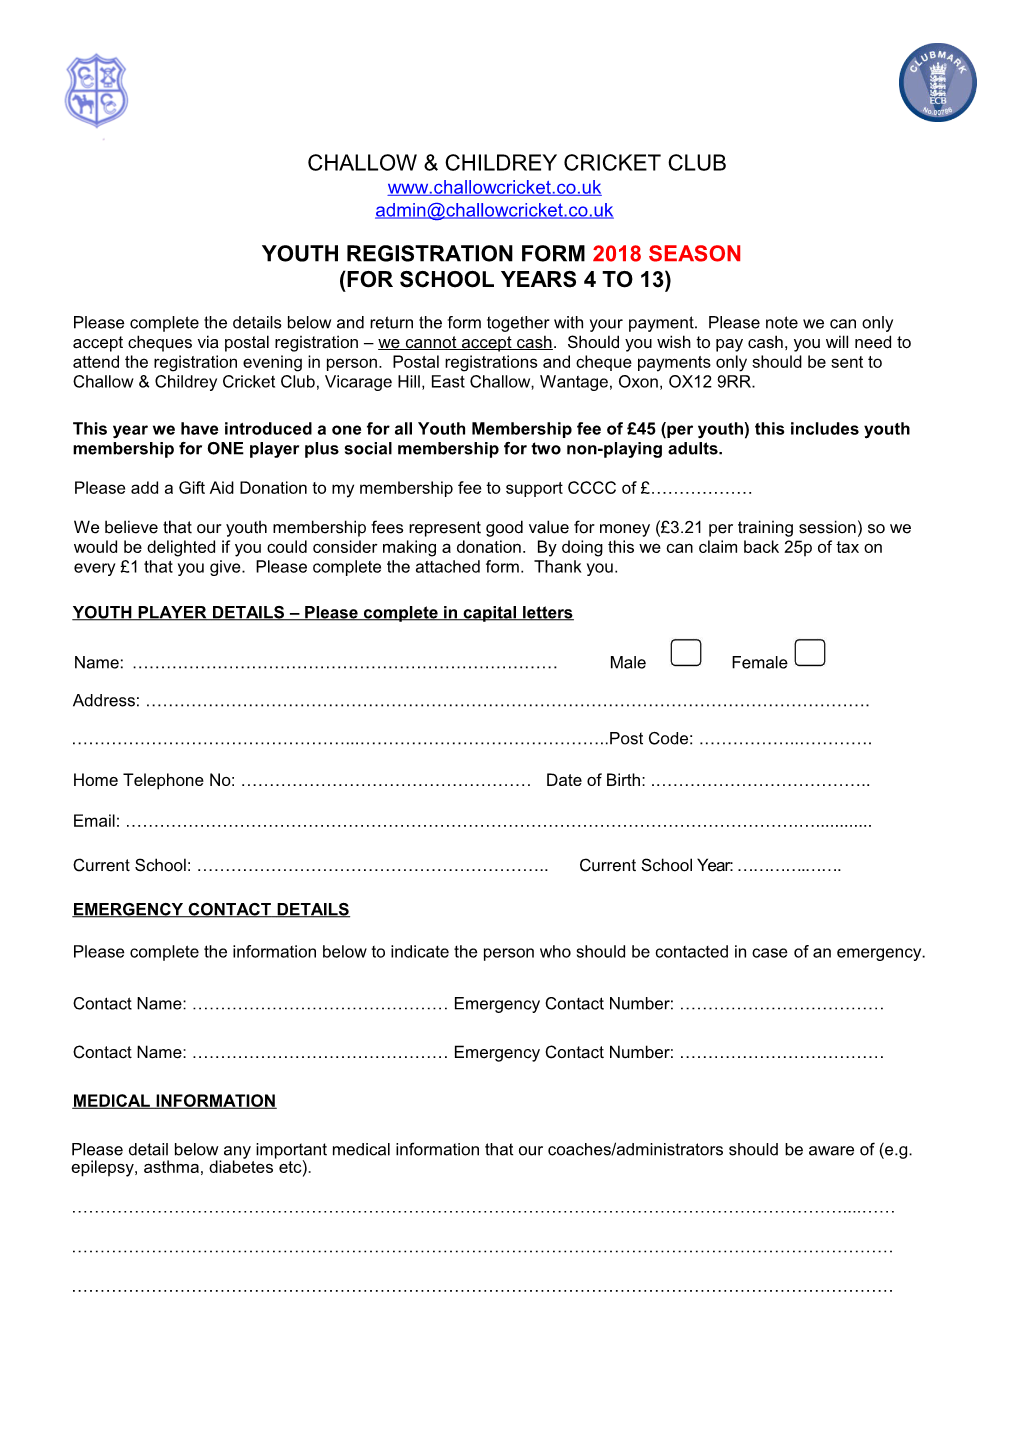 Youth Registration Form 2018Season